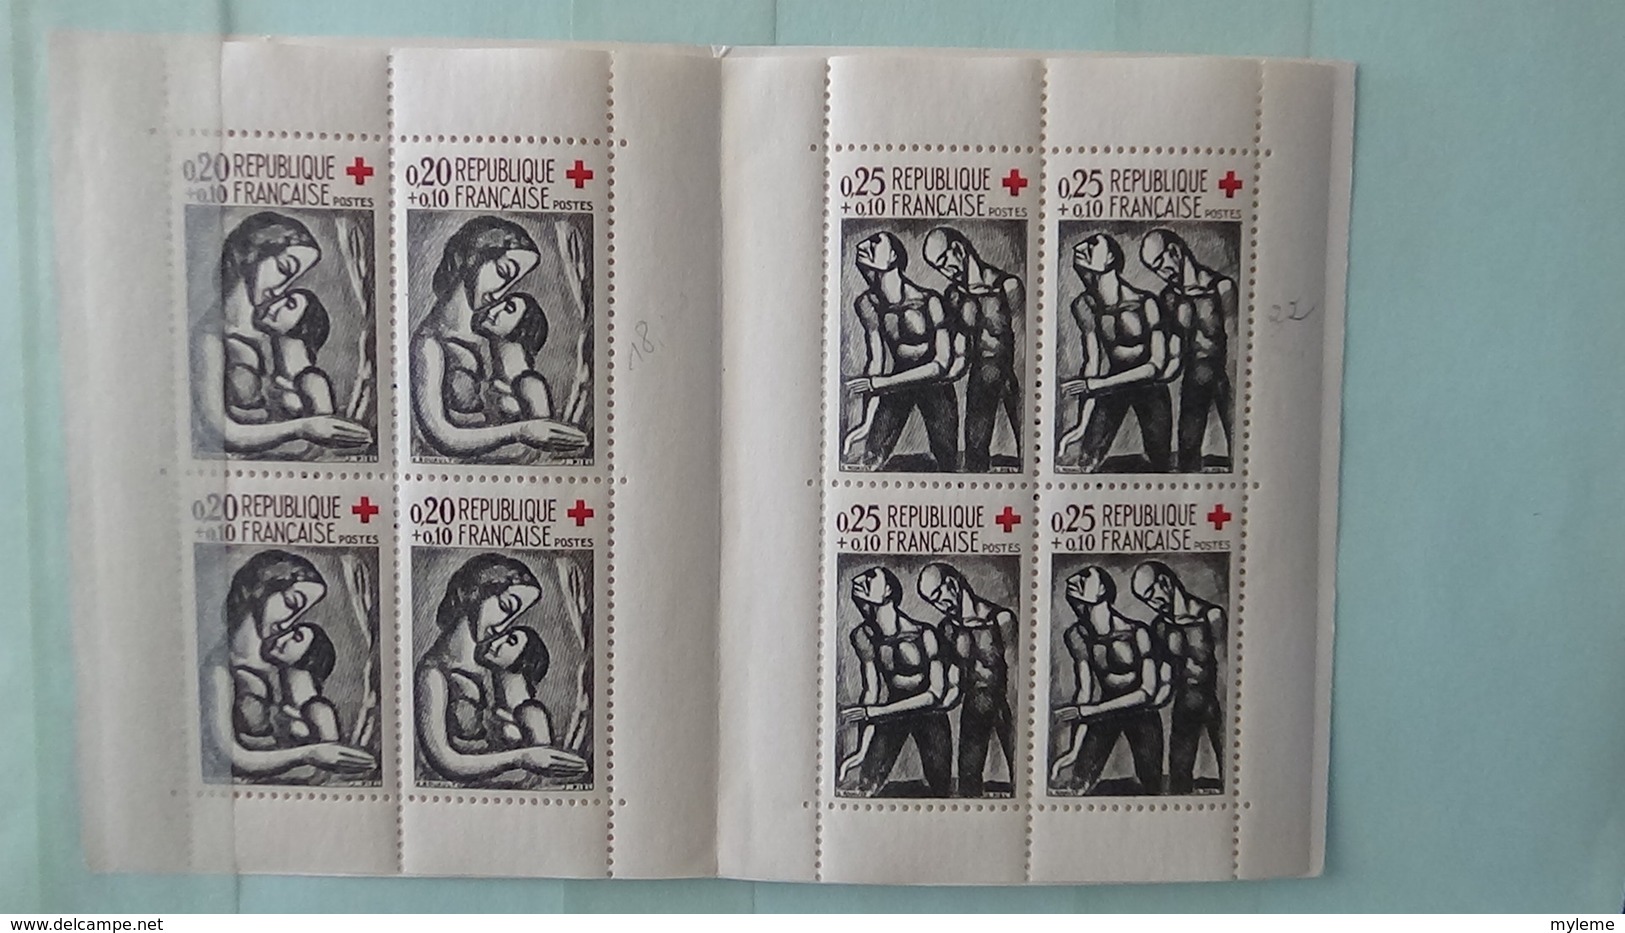 Carnet à choix avec timbres années 30 à 60 tous ** dont séries GH, croix rouges ... A saisir !!!